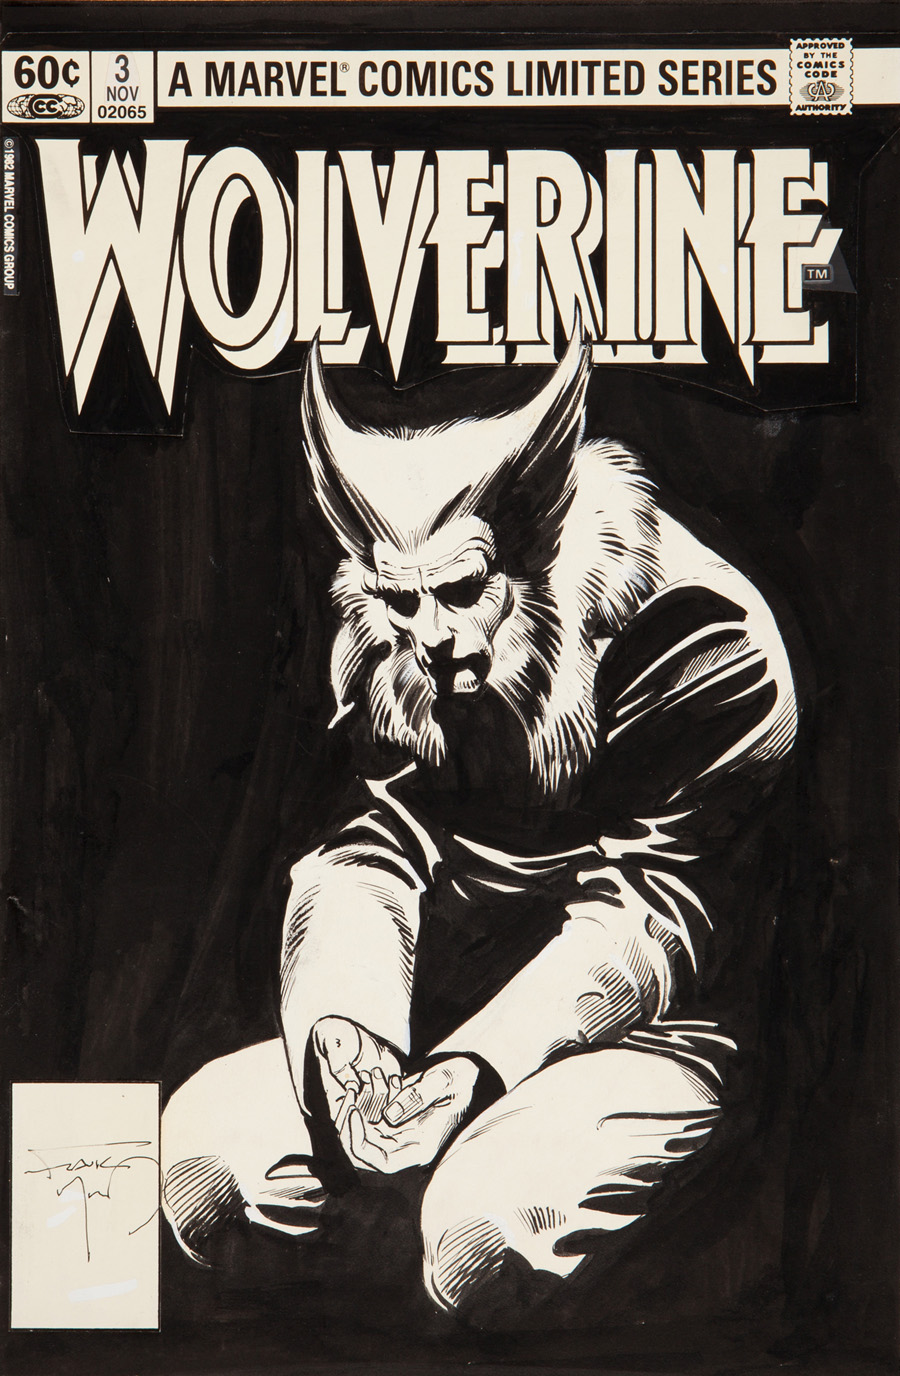 Cover art for “Wolverine” #3, November 1982